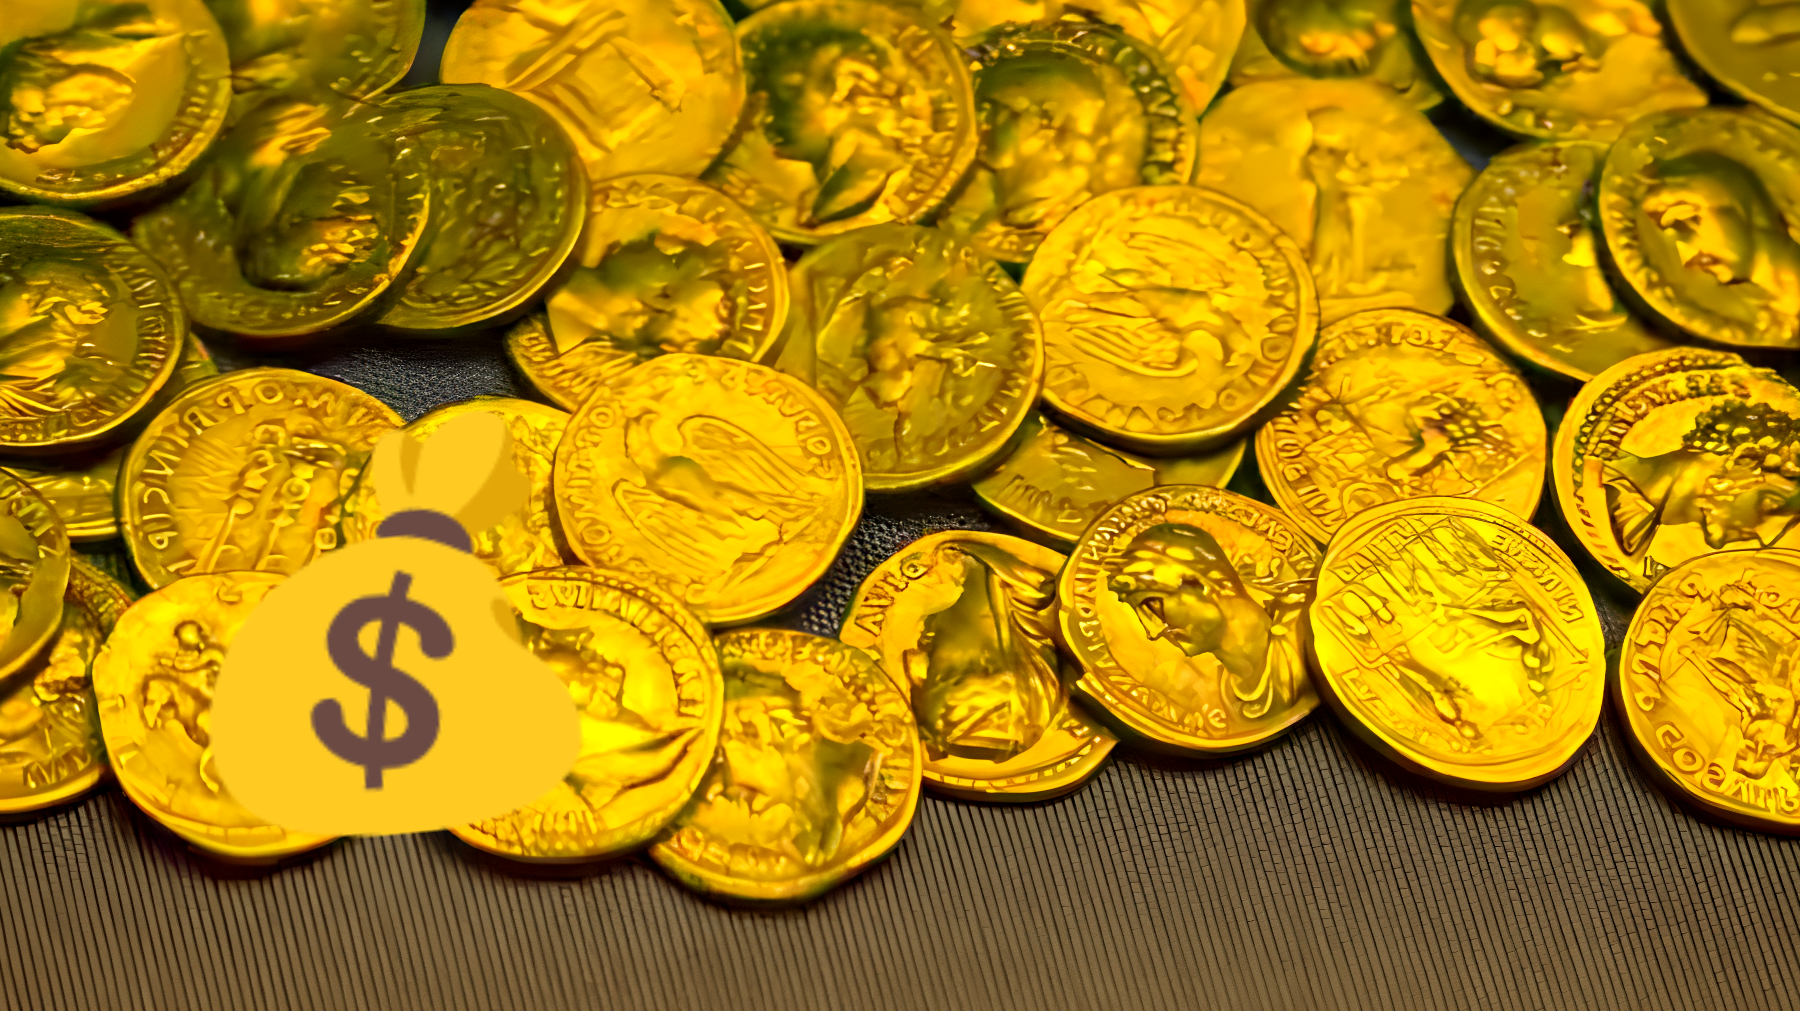 Scopri se hai questa moneta rara: potresti non dover più lavorare, è valutata 11 milioni!